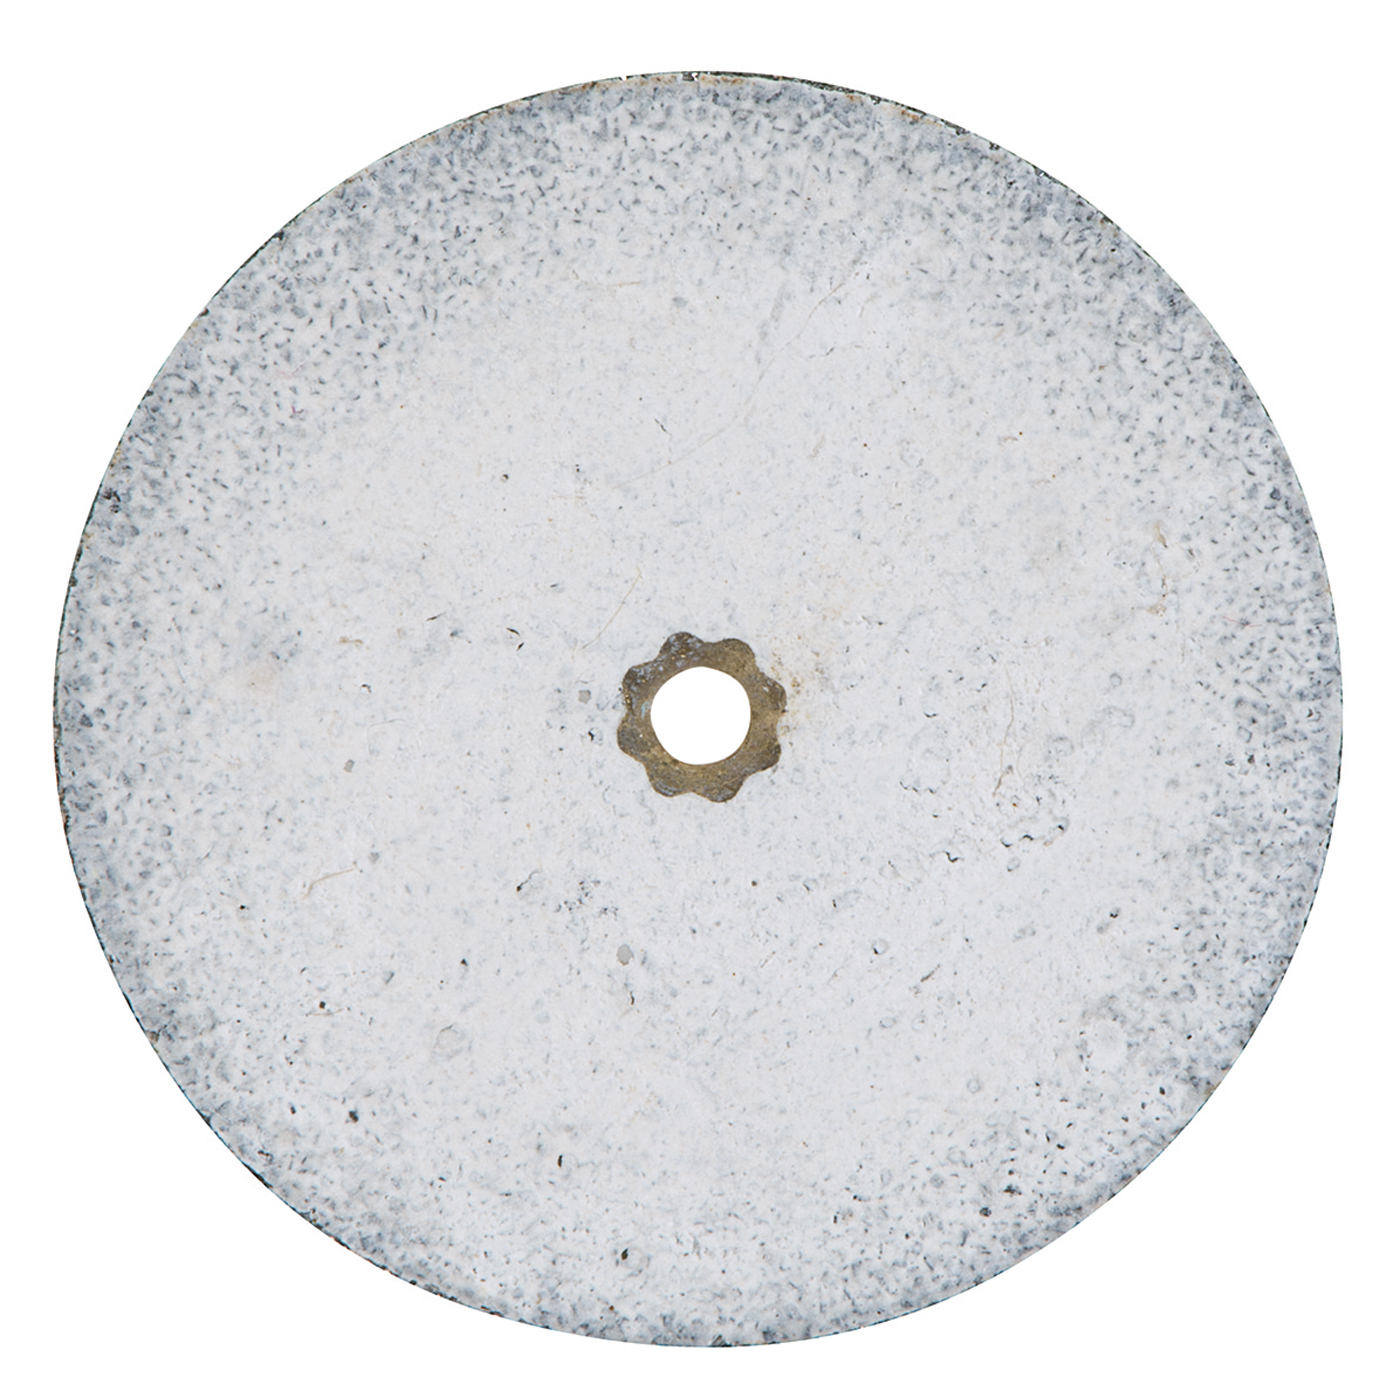 Heatless Grinding Discs, ø 25 x 2.4 mm - 50 pieces